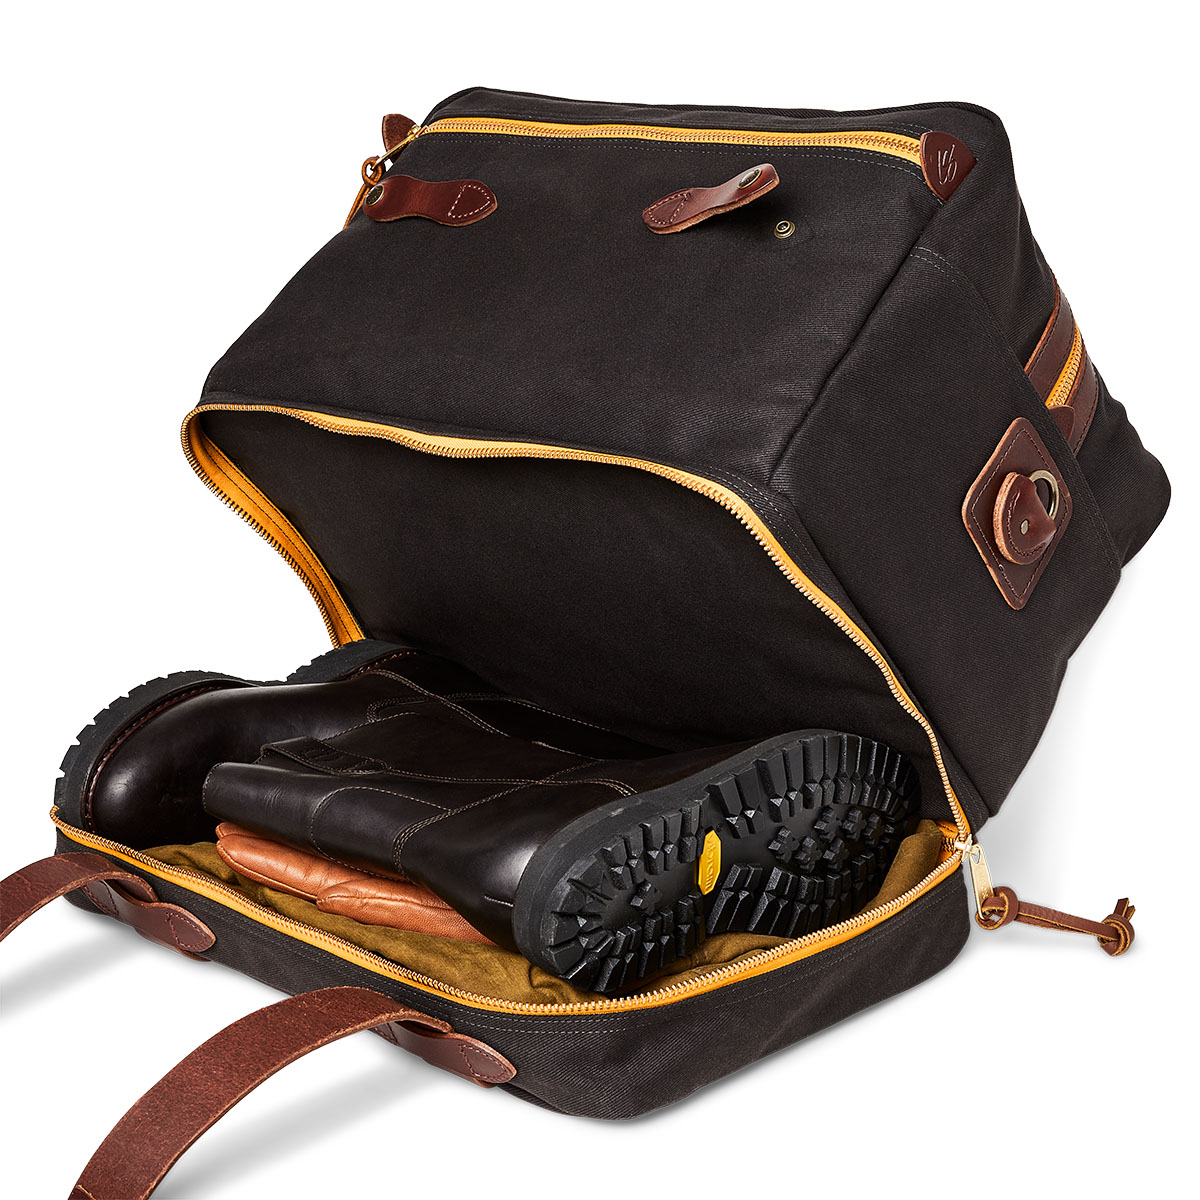 Filson Traveller Outfitter Bag Stapleton Cinder mit Reißverschluss-Bodenfach und Reißverschlusstaschen über die gesamte Breite